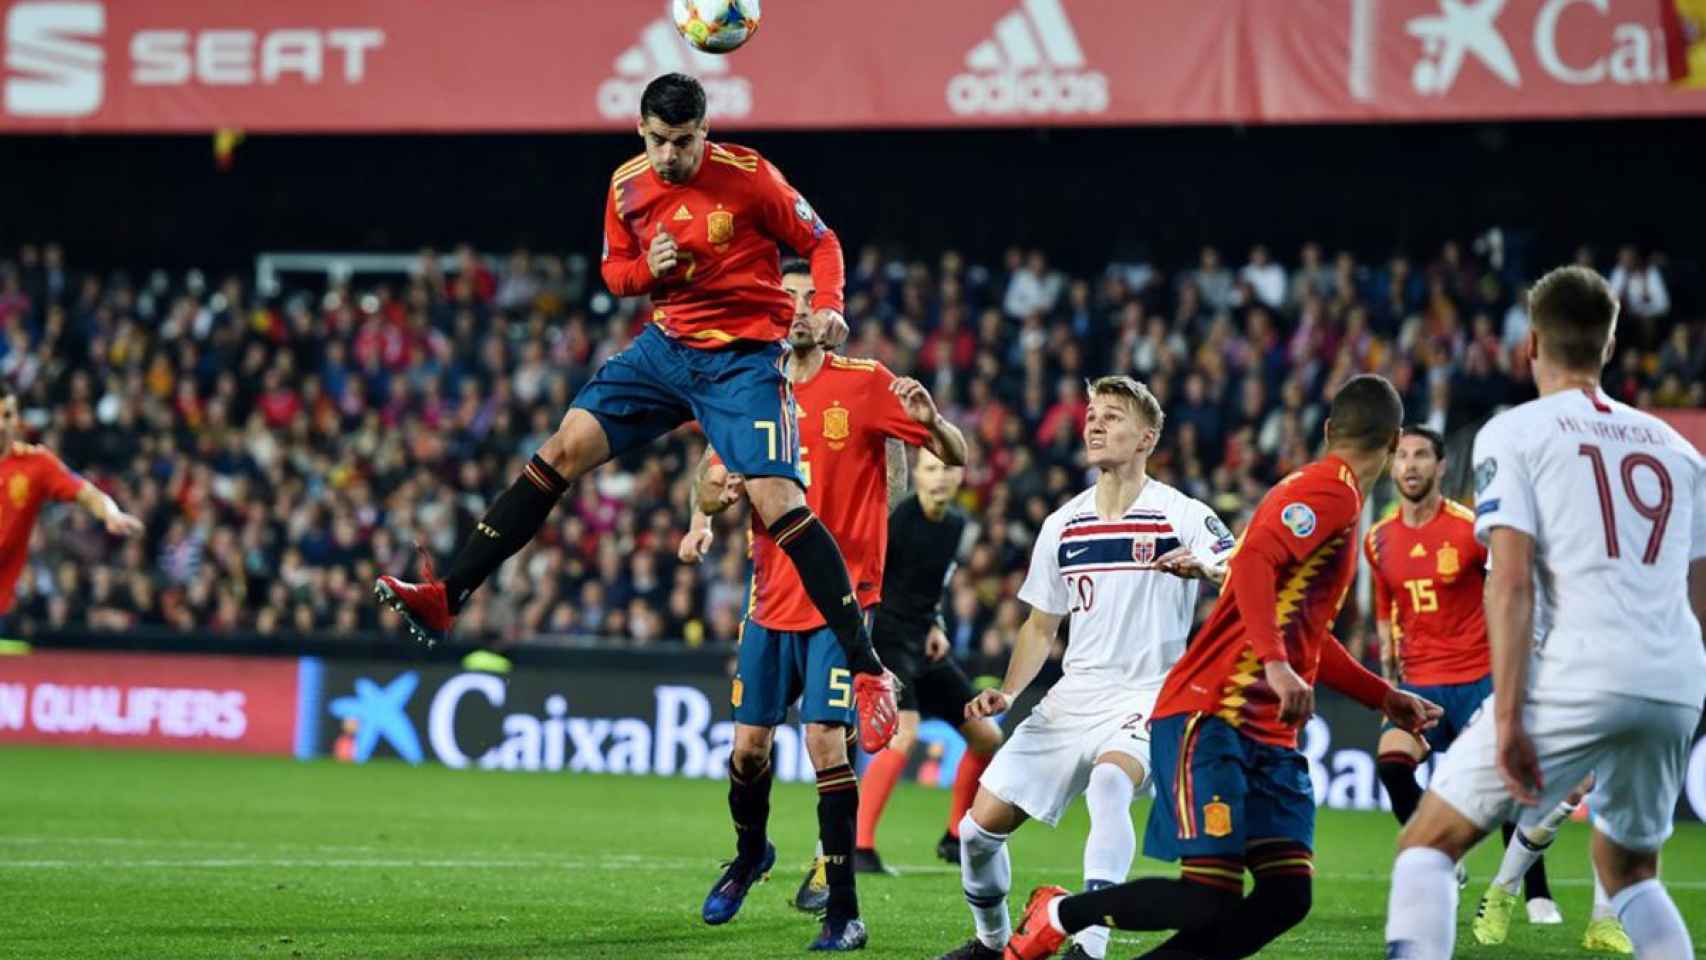 El remate de cabeza, una práctica común en los futbolistas profesionales. En la foto cabecea el español Morata.